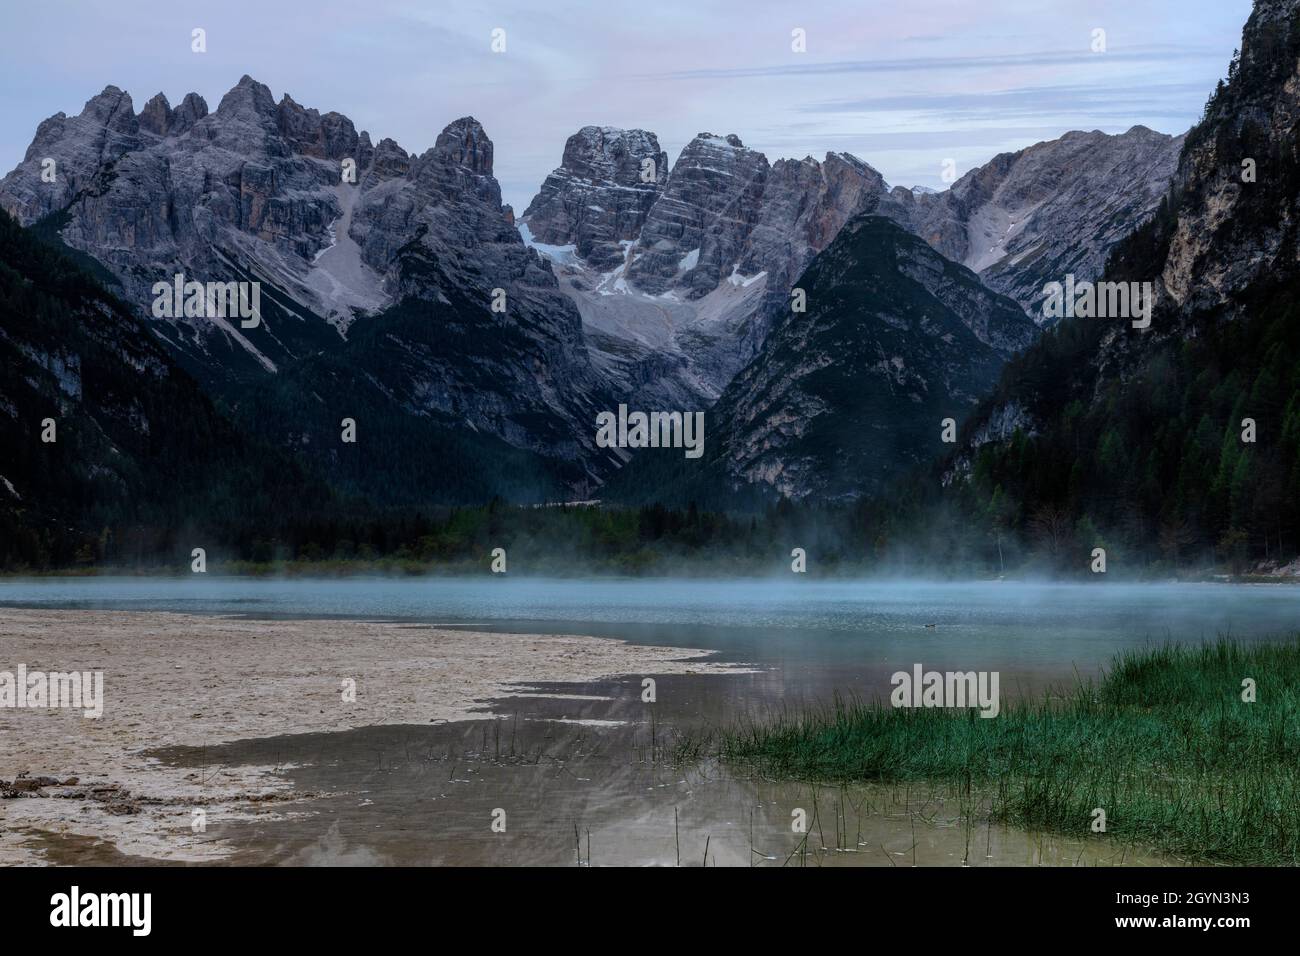 Lago di Landro, Toblach, South Tyrol, Dolomites, Italy Stock Photo